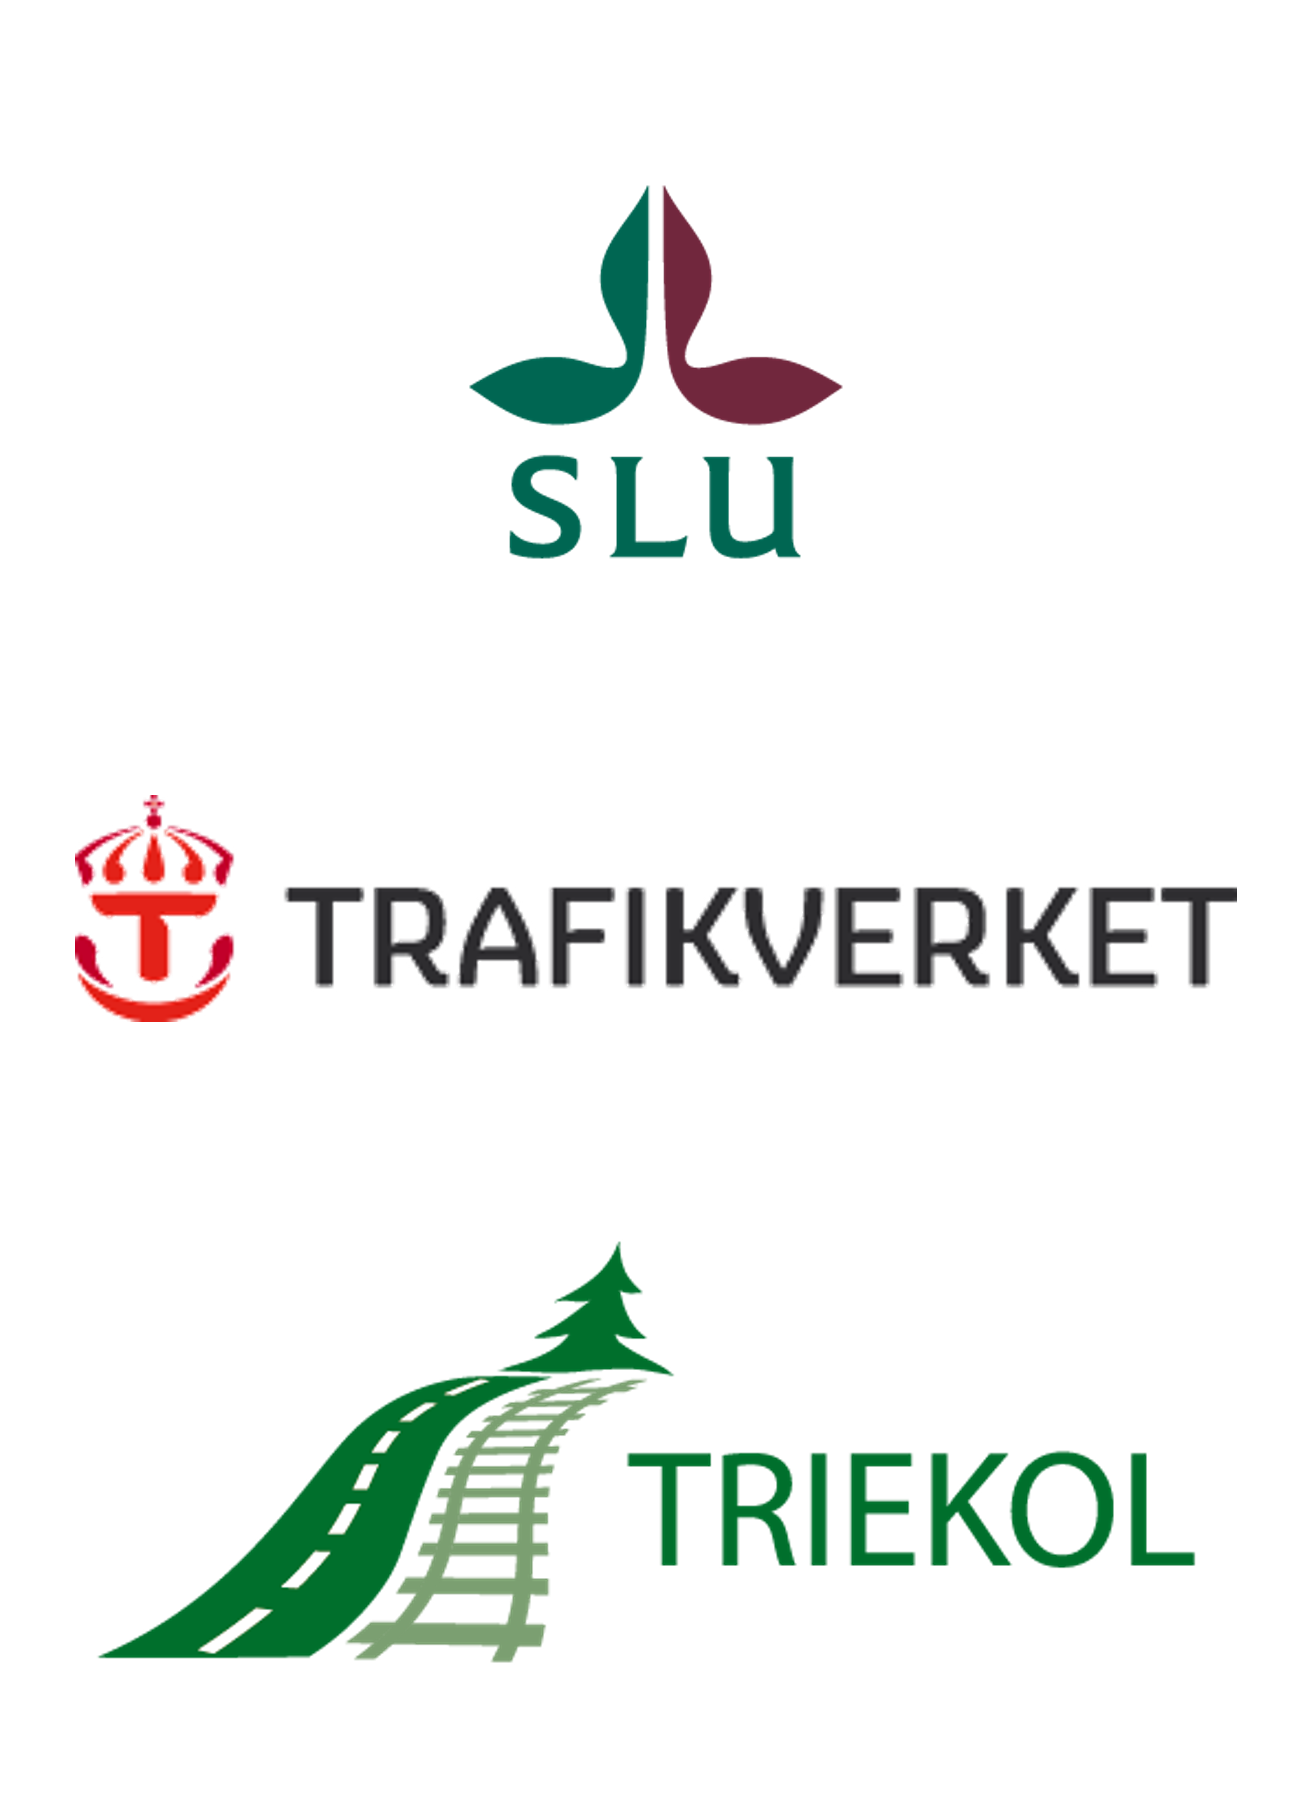 SLU, Trafikverket och TRIEKOL är arrangörer